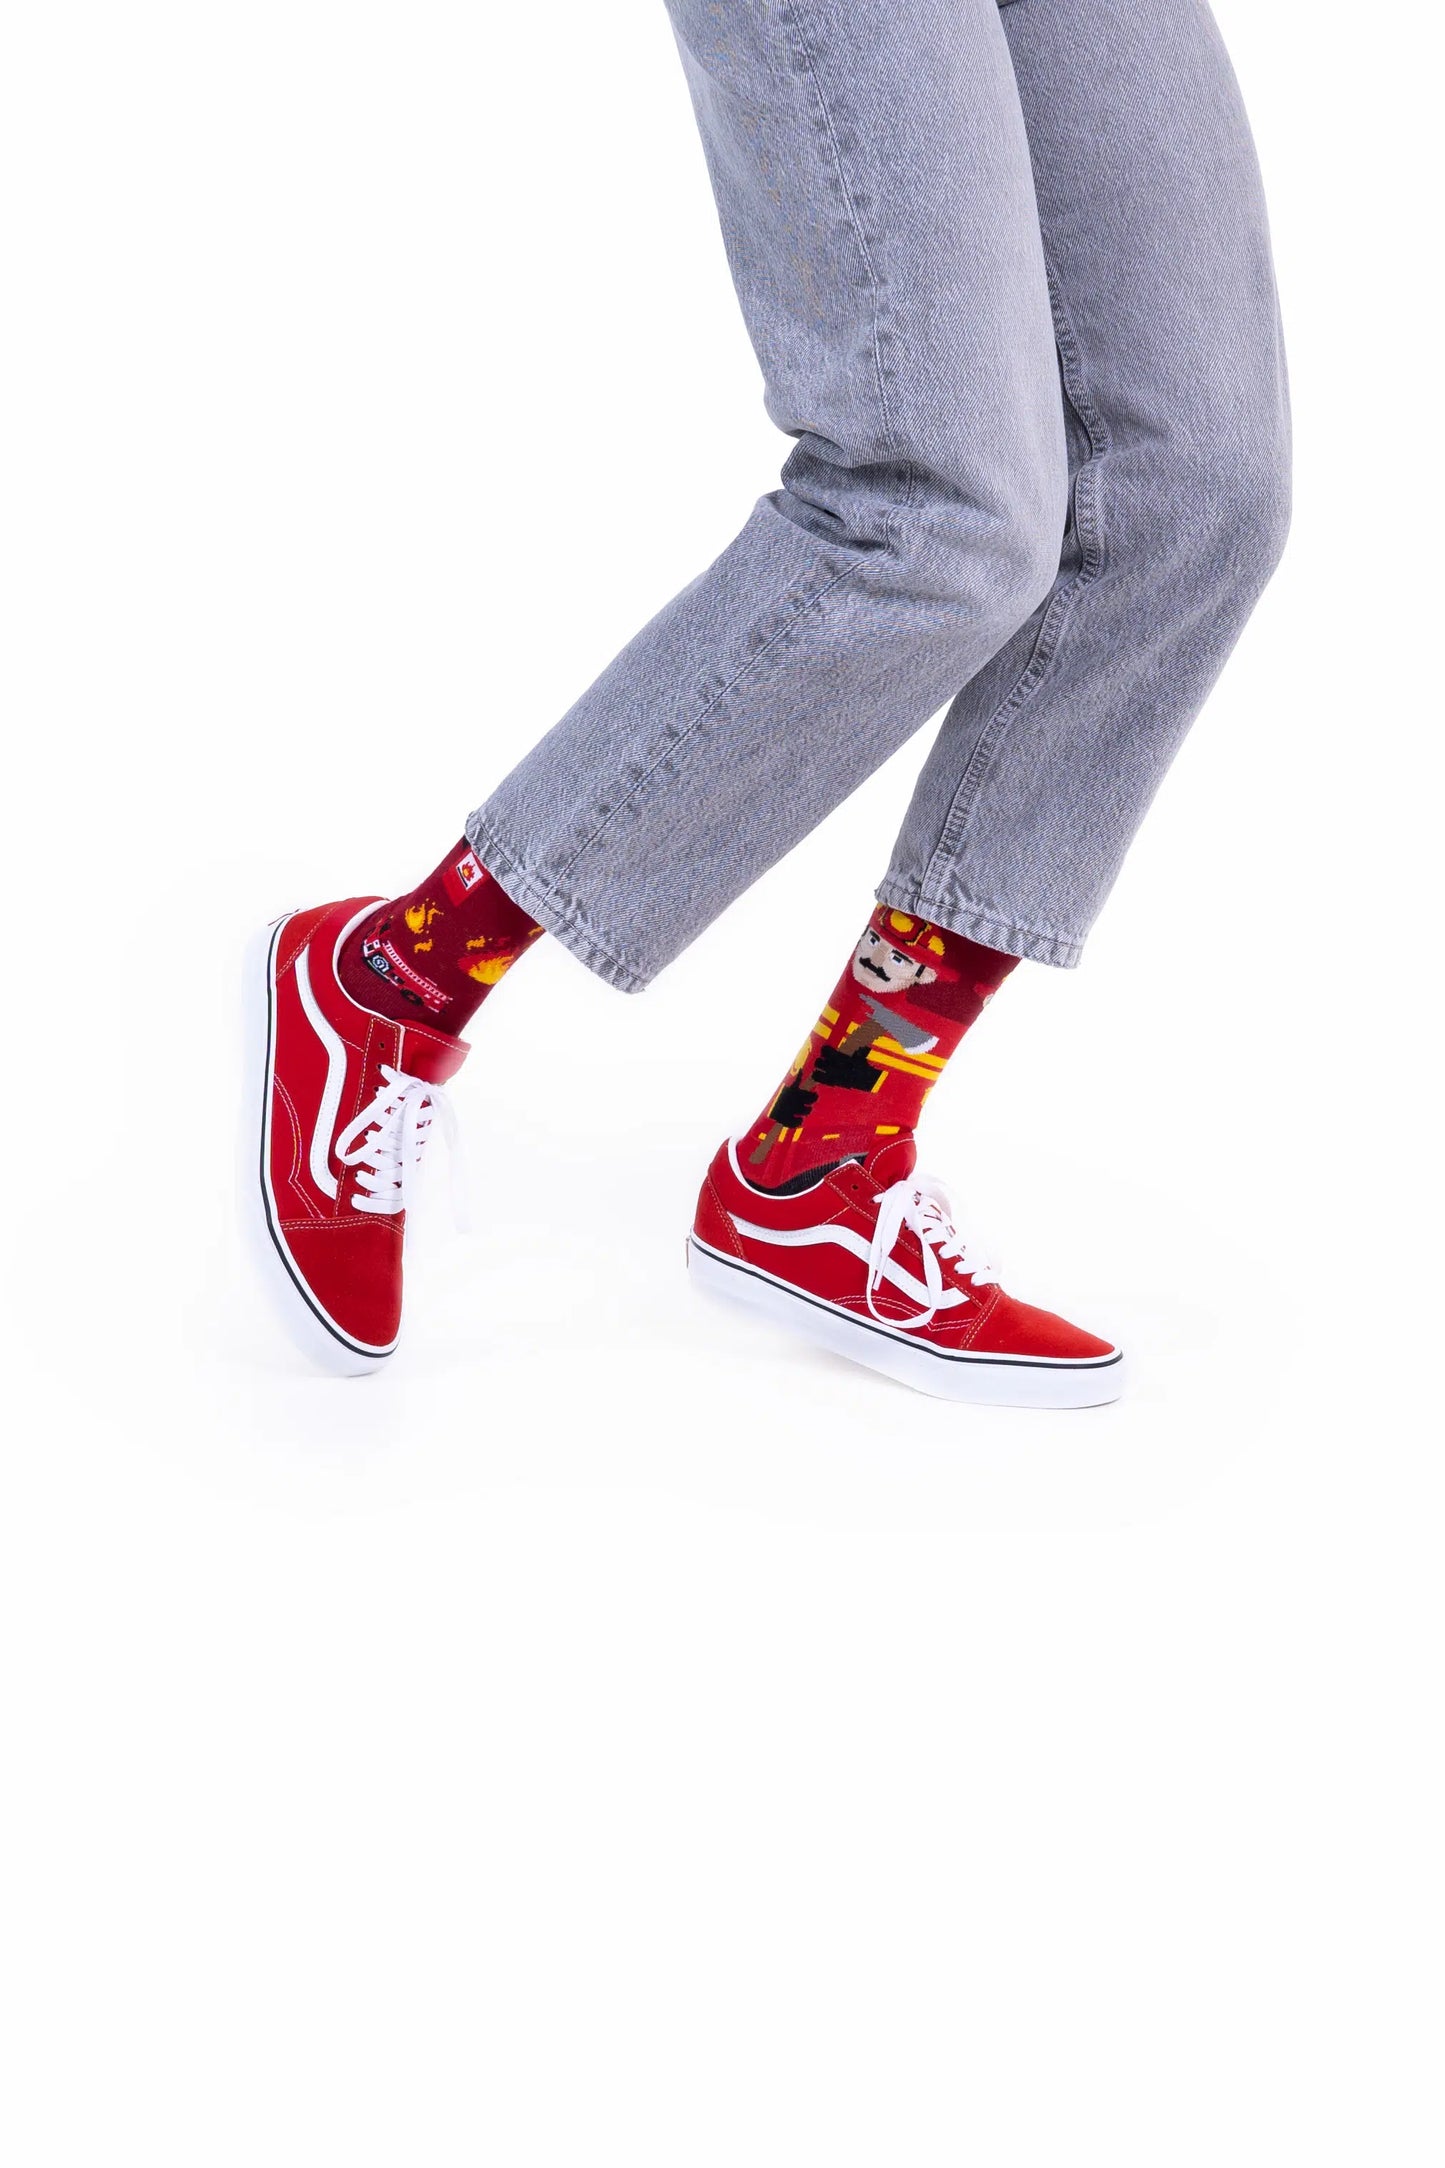 The Fireman Socken für Kinder und Erwachsene